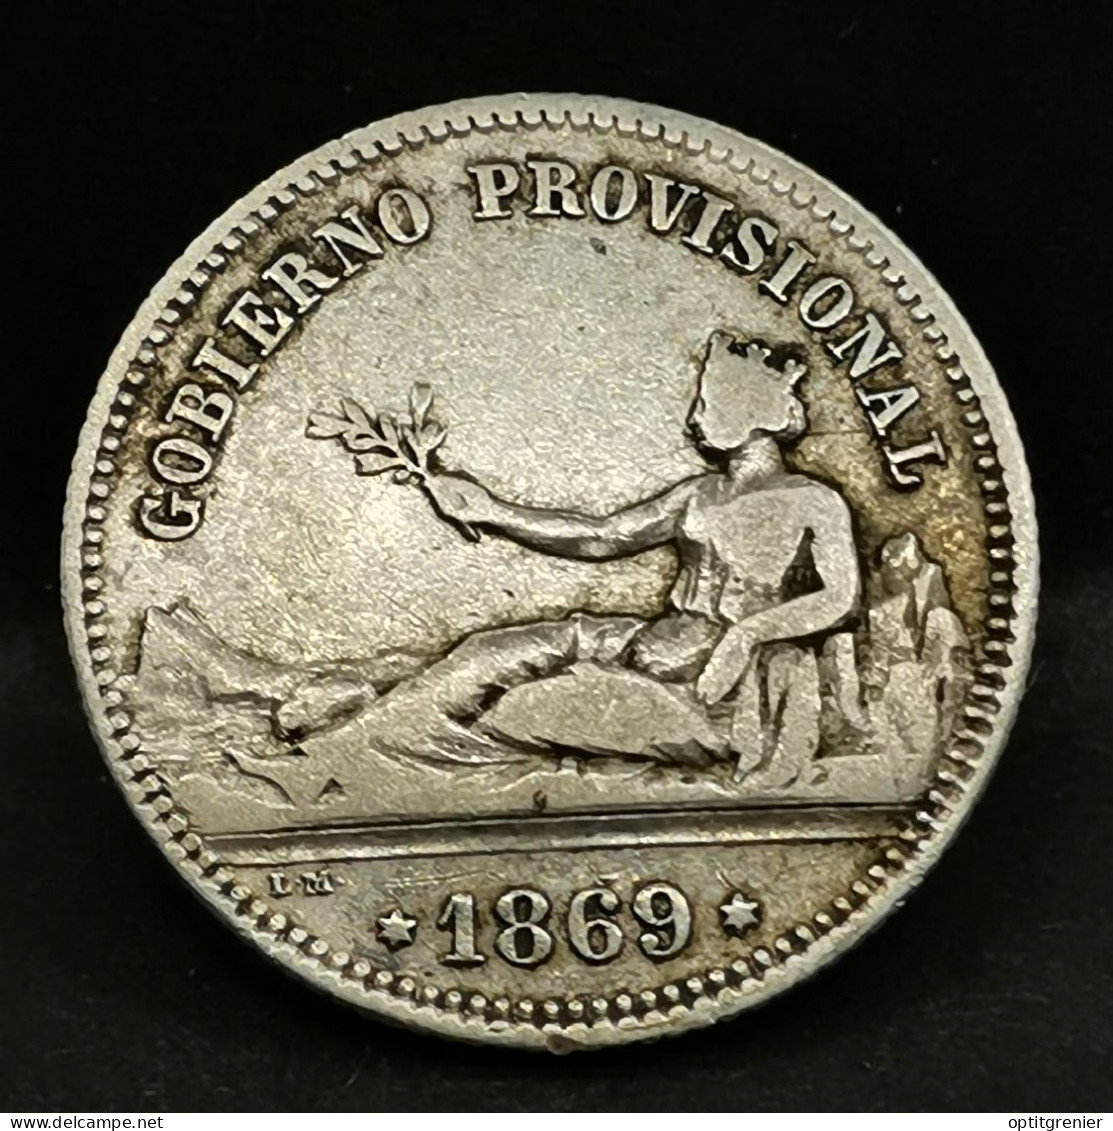 1 PESETA ARGENT 1869 Gouvernement Provisoire ESPAGNE / SPAIN SILVER - Premières Frappes